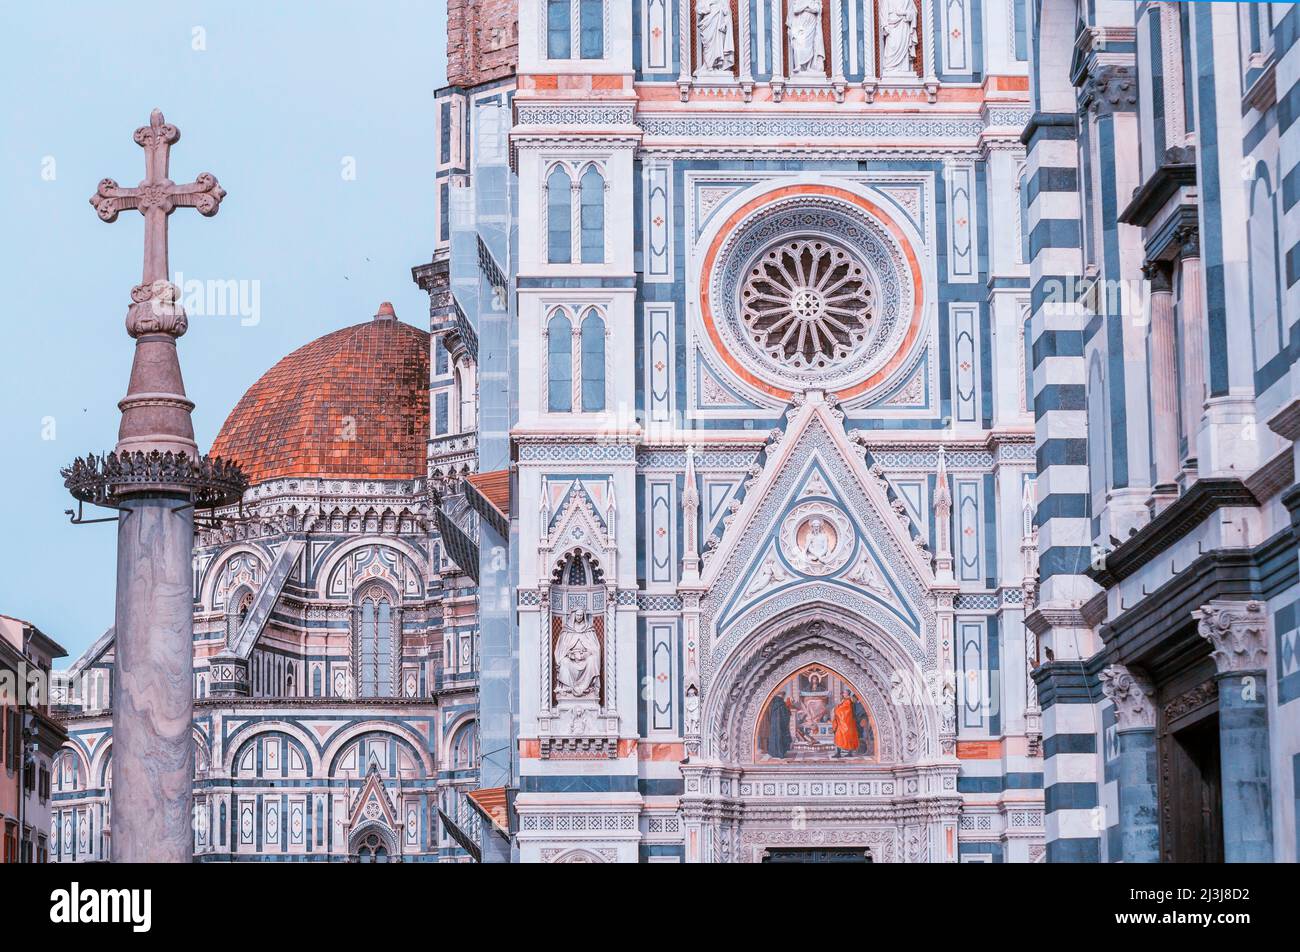 Duomo Santa Maria del Fiore facade; Florence, Tuscany; Italy Stock Photo